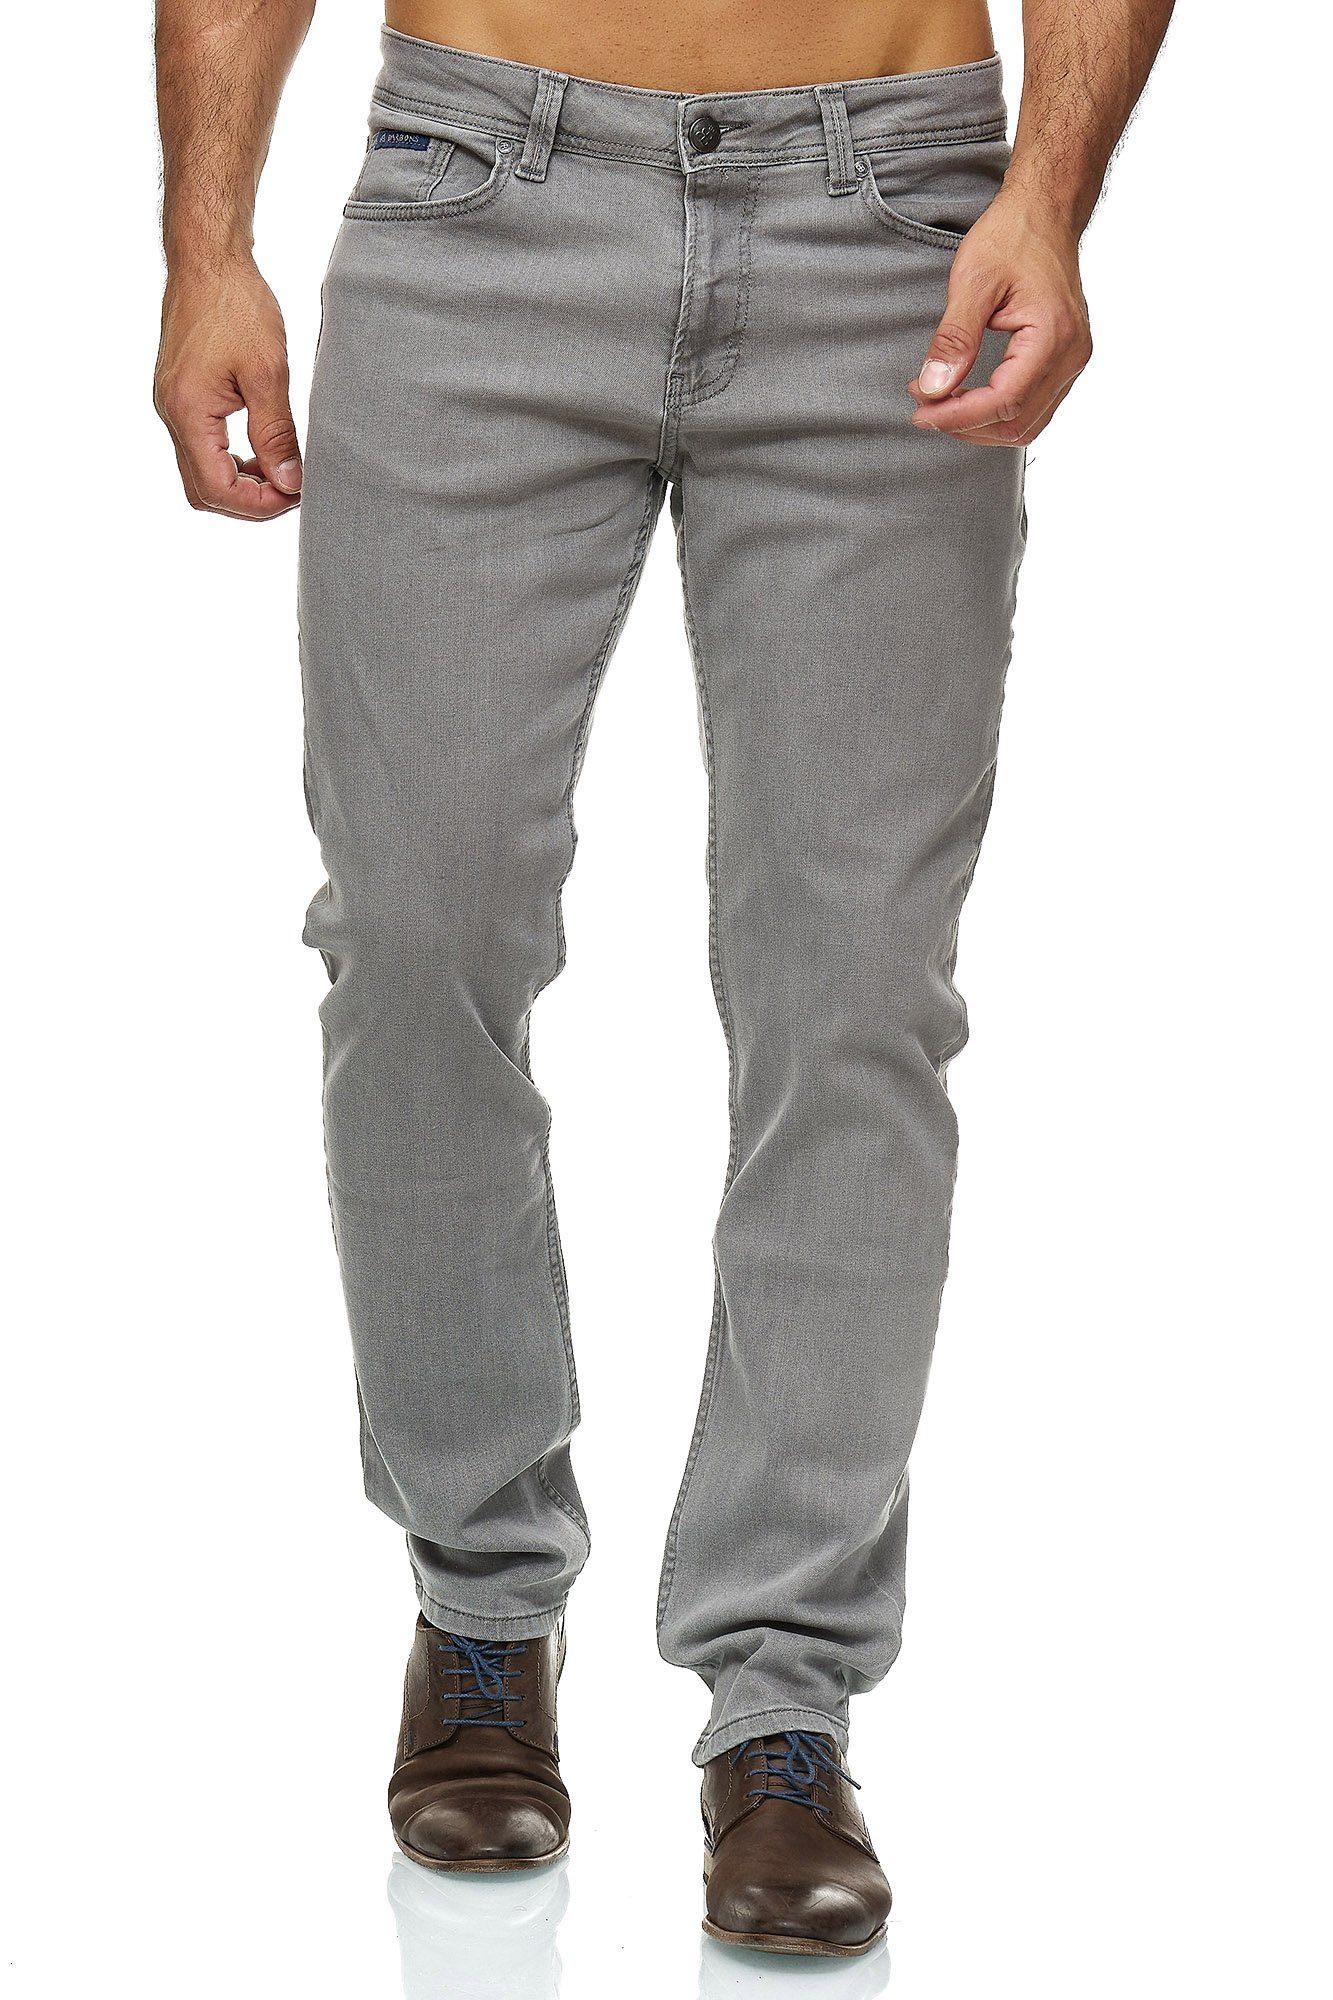 BARBONS 5-Pocket-Jeans Herren Regular Fit 5-Pocket Design 06-Hellgrau